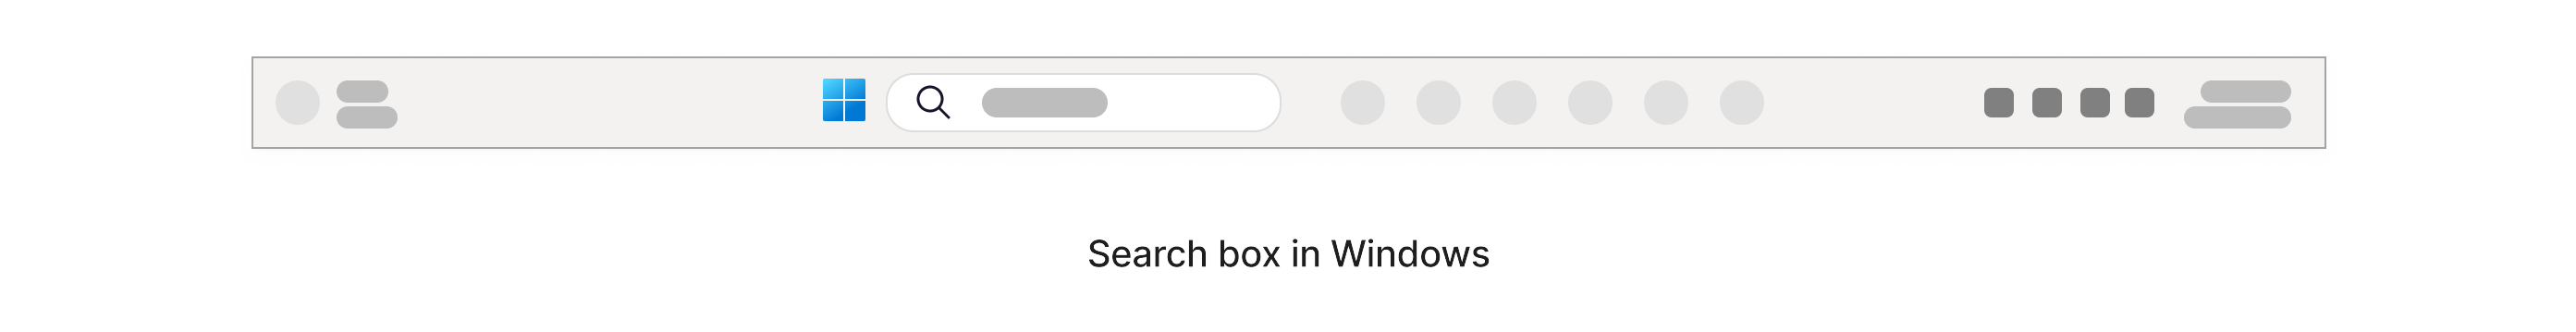 Поле за търсене с икона за увеличаване на мащаба в него, която се намира в лентата на задачите на Windows в долната част на екрана.